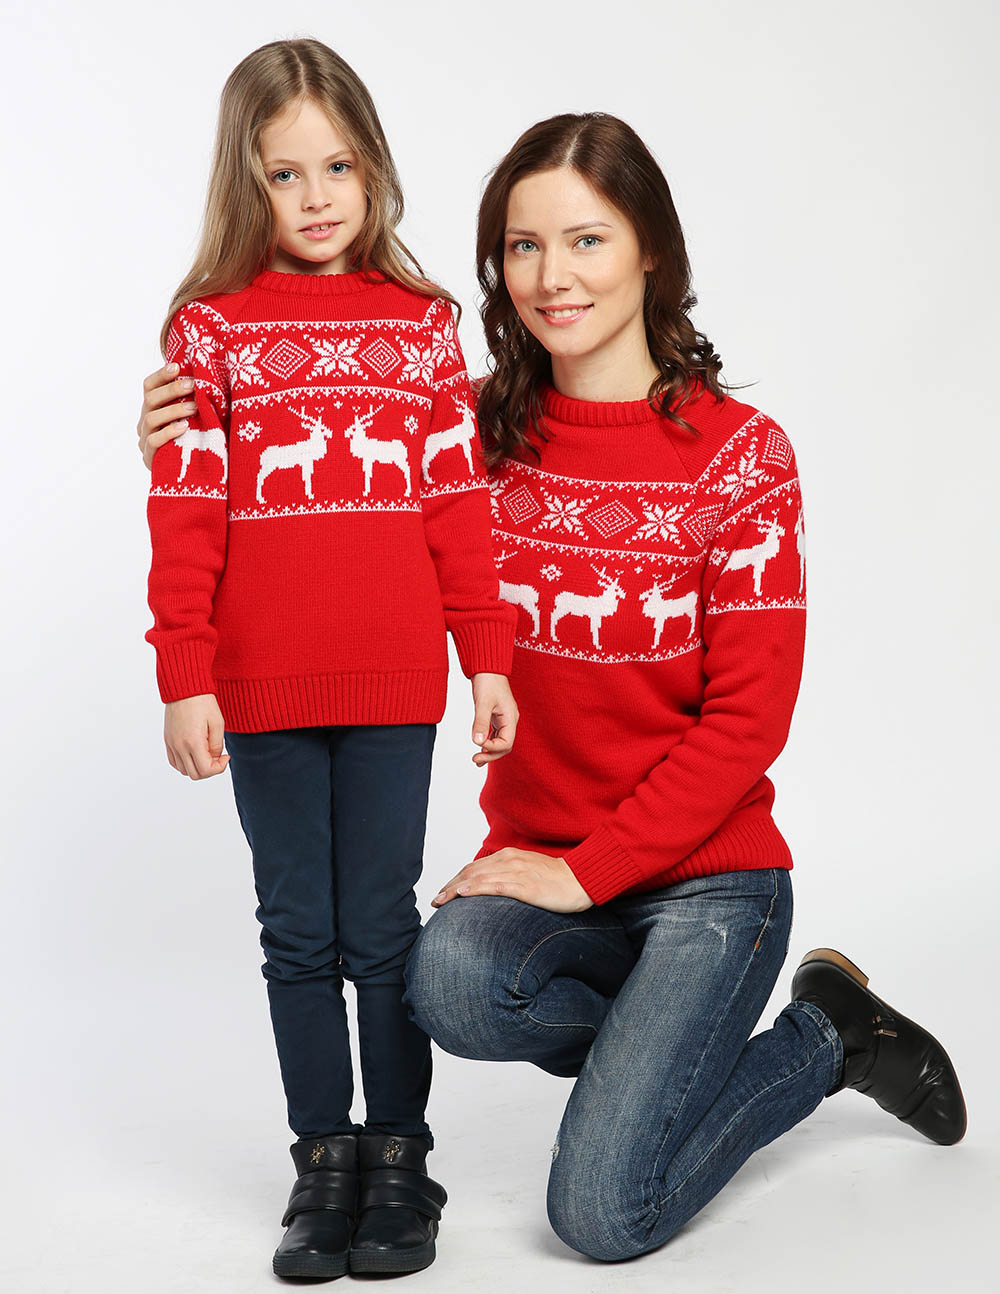 Свитера мам купи. Мама с дочкой в свитерах. Новогодние кофты на семью. Свитера с оленями для всей семьи недорогие. Джемпер семейный.